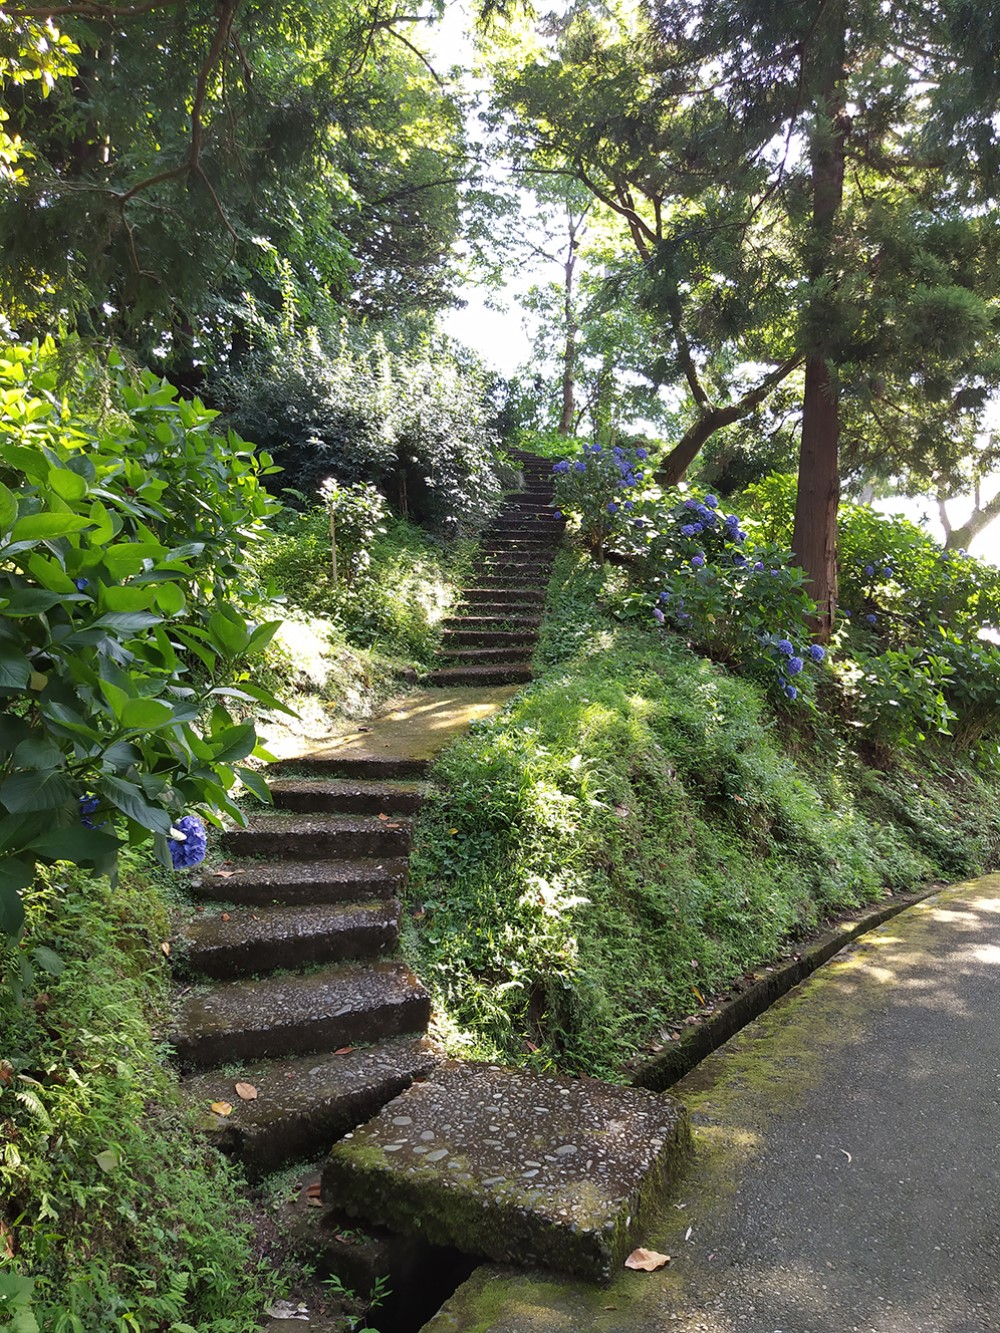 Ботанический сад холмистый — иногда приходится очень долго шагать вверх